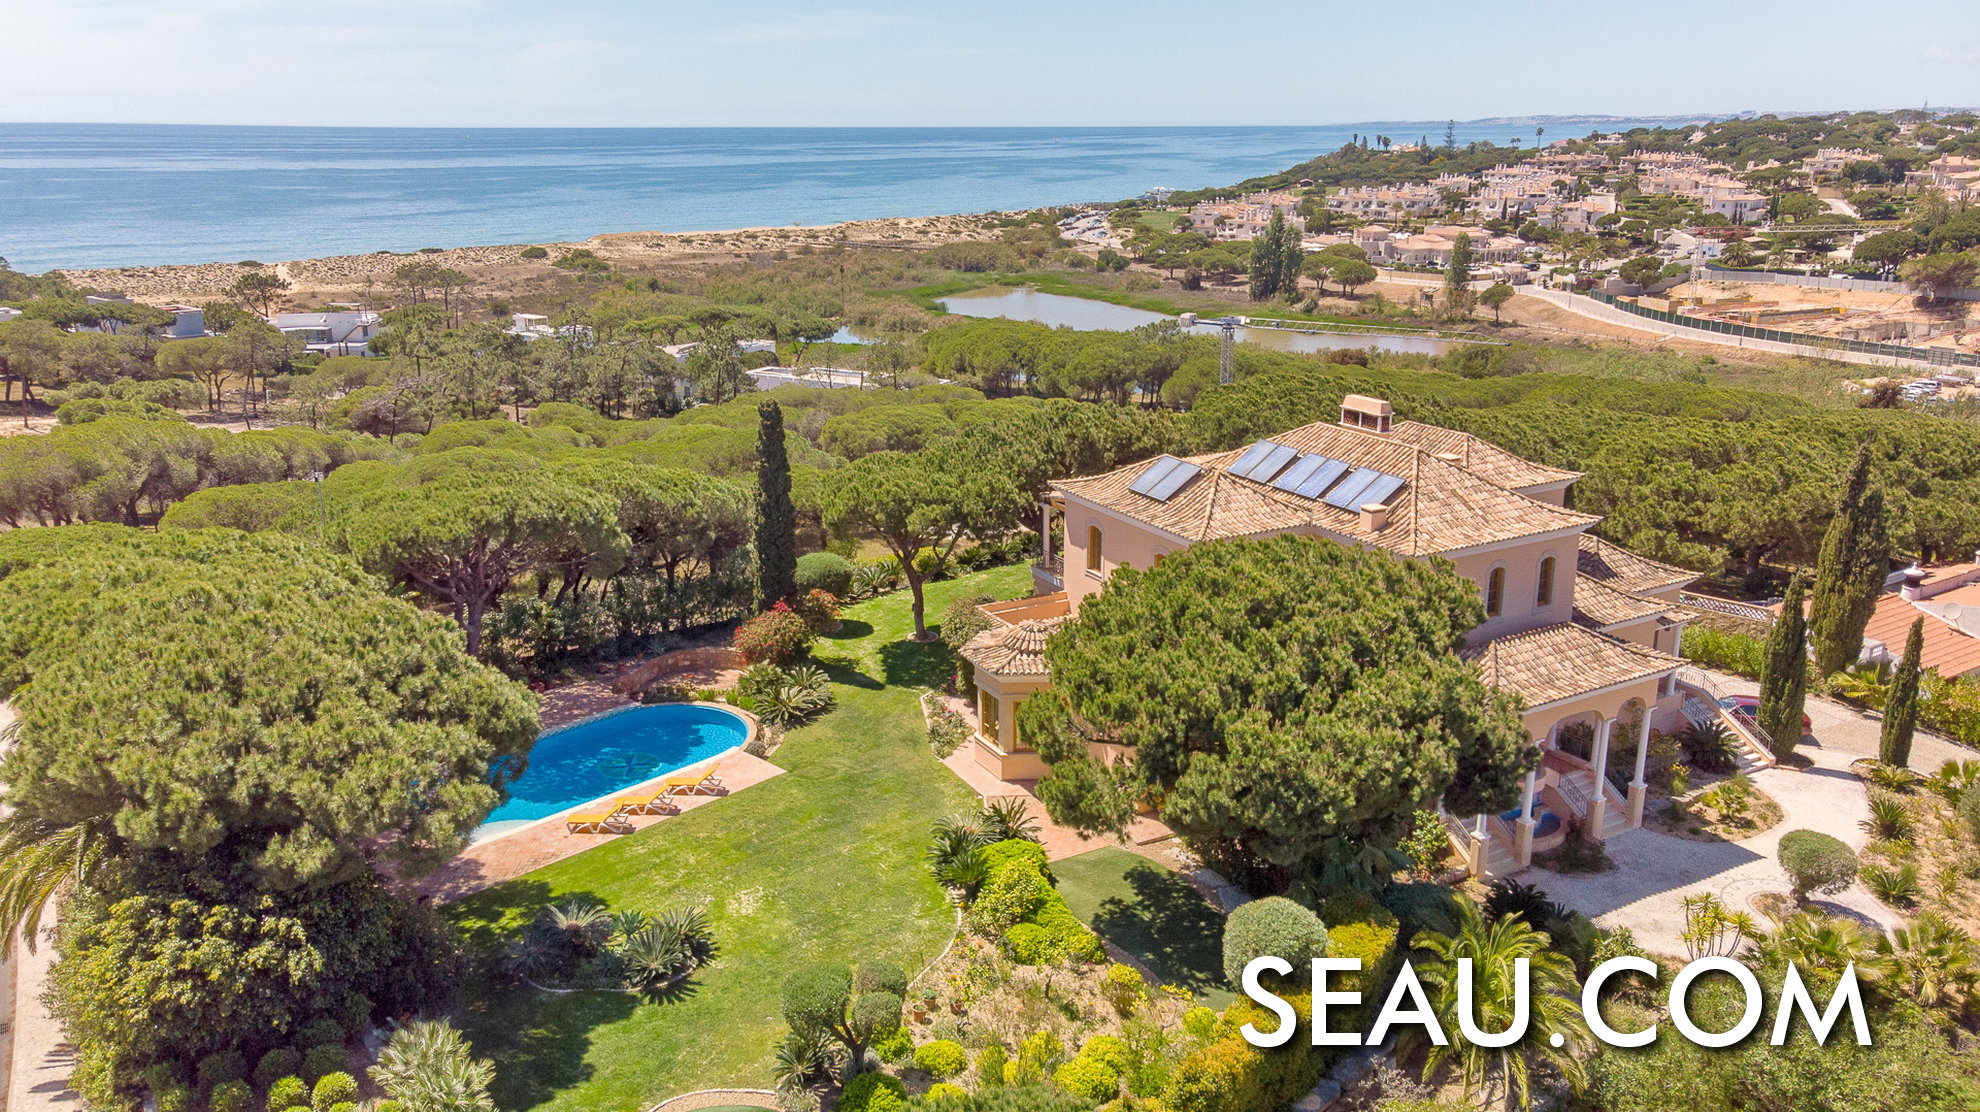 Spektakuläre Lage zum Leben in Portugal, eine Villa mit Meerblick, umgeben von Natur im Ferienort Vale do Lobo, Algarve